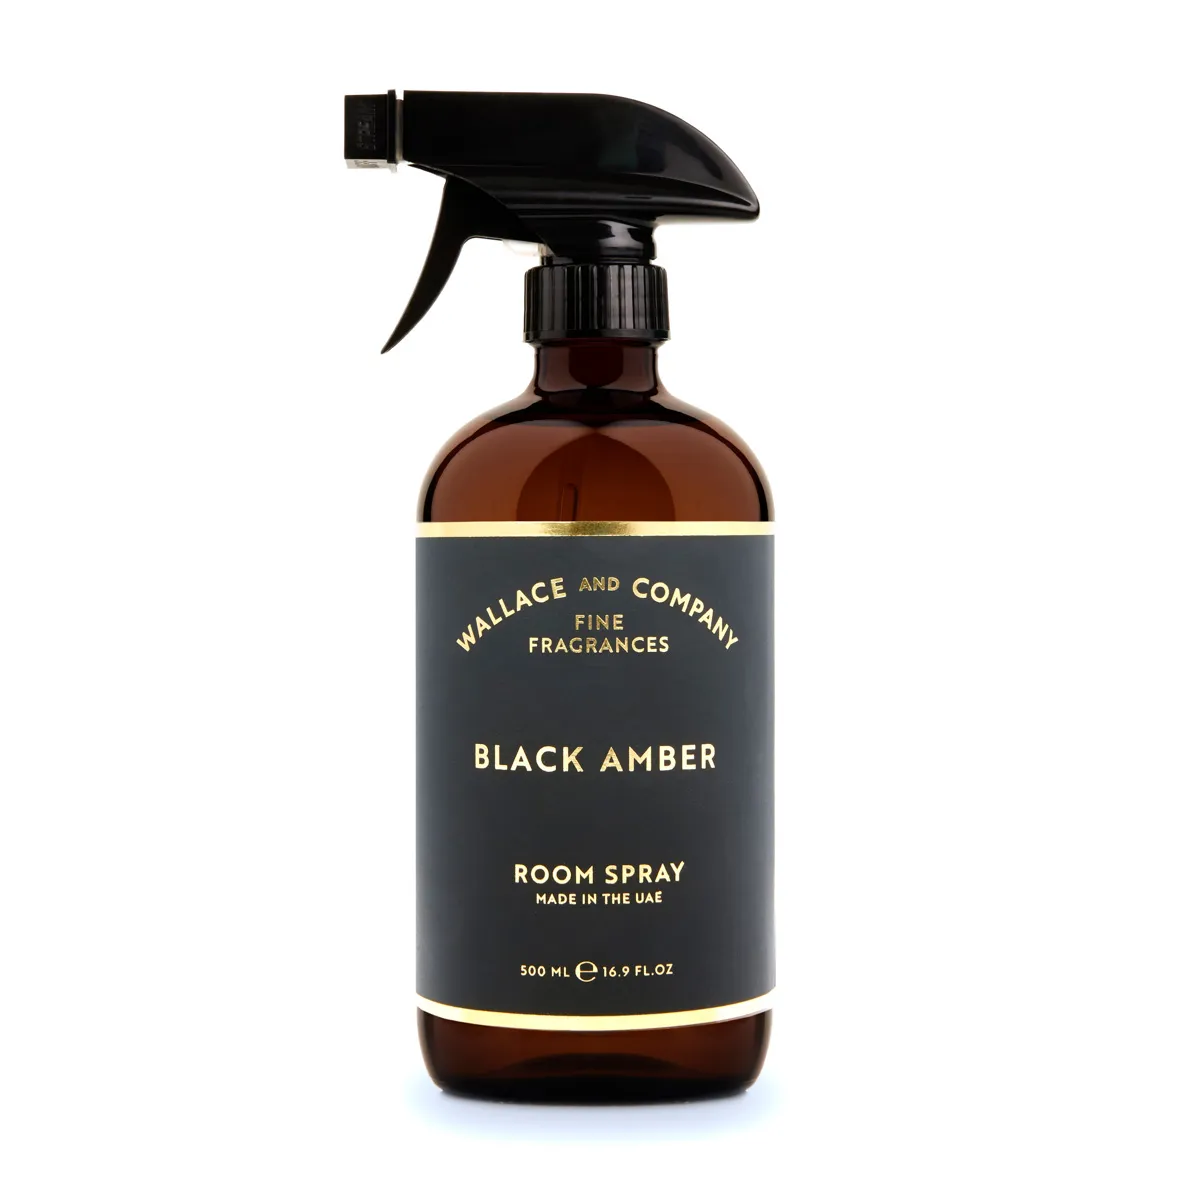 Black Amber Room Spray